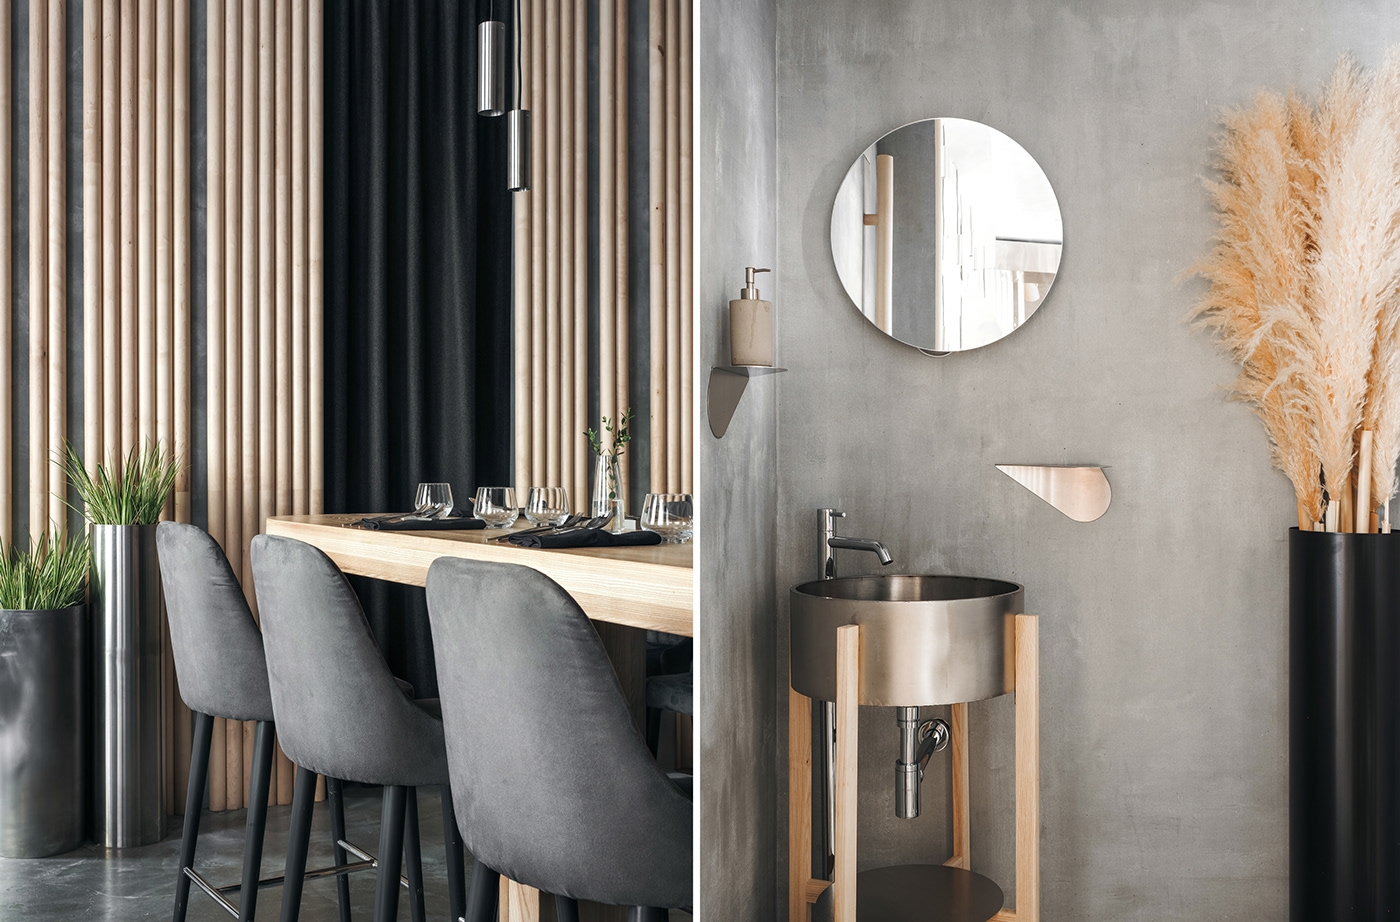 wood concrete design Interior modern birch morenarchitecture Ethnic metal Minimalism